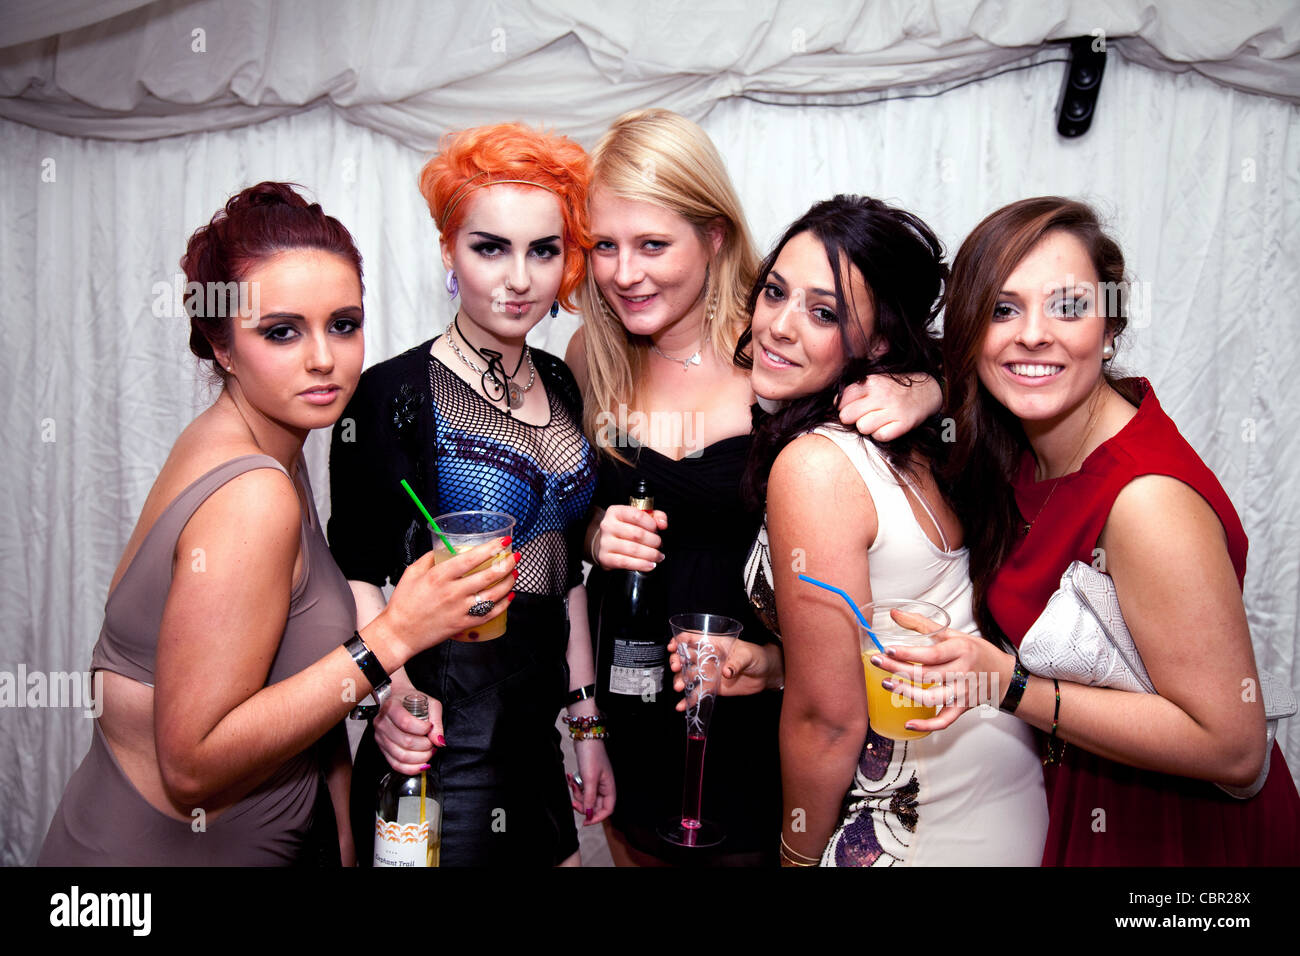 Eine Gruppe von fünf Jugendlichen Mädchen im Teenageralter mit Alkohol bei einer Partei, England, UK Stockfoto